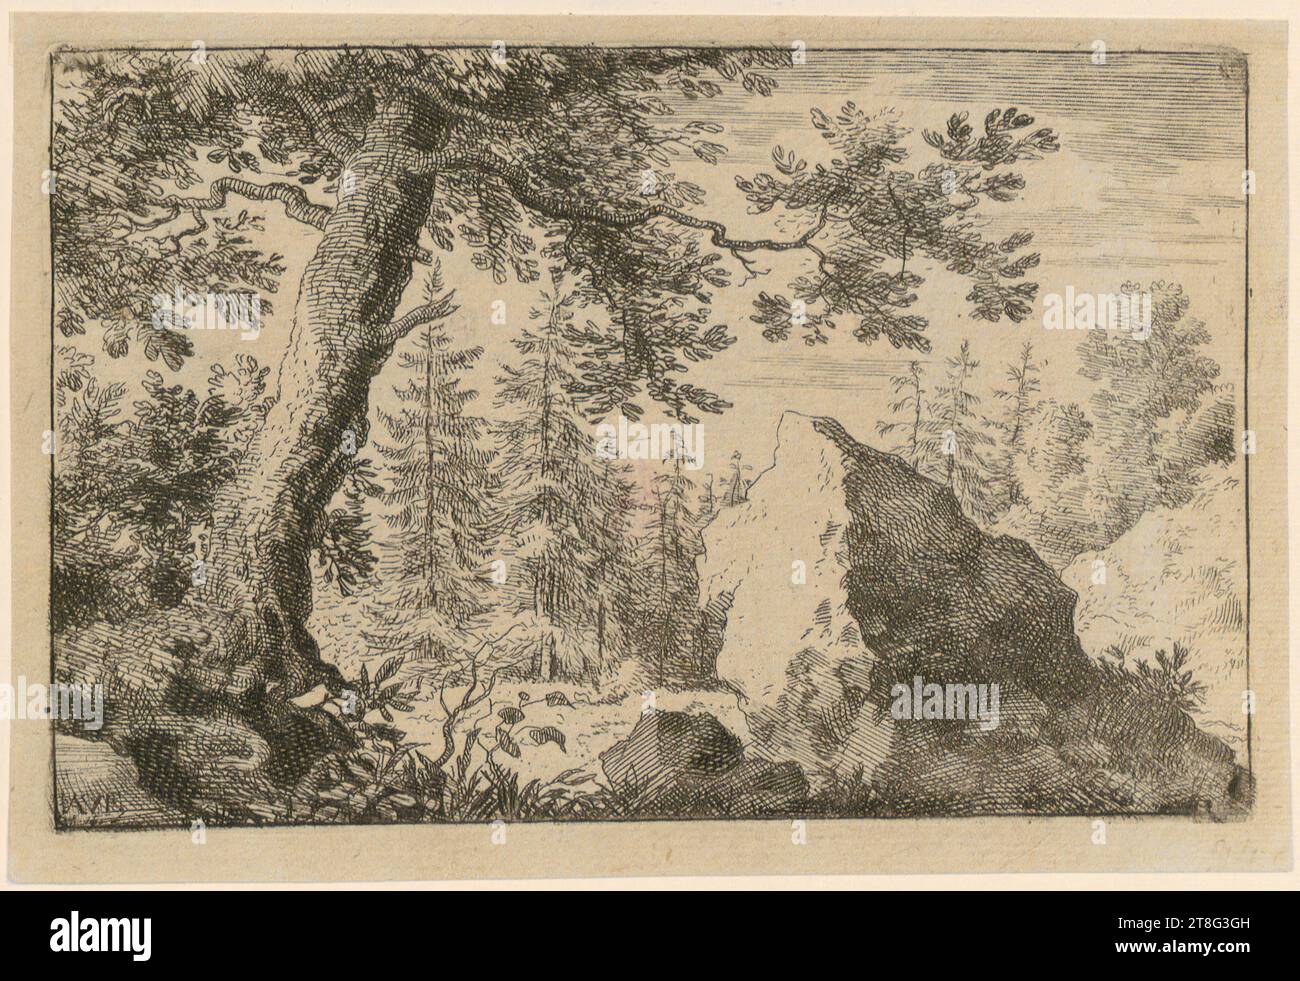 Allart van Everdingen (1621 v. Chr. - 1675), Erratischer Block im Wald, Druckmedium: 1636 - 1675, Ätzung, Kupferstich und Trockenpunkt, Bogengröße: 11,6 x 17,1 cm, links unten monogrammiert Stockfoto